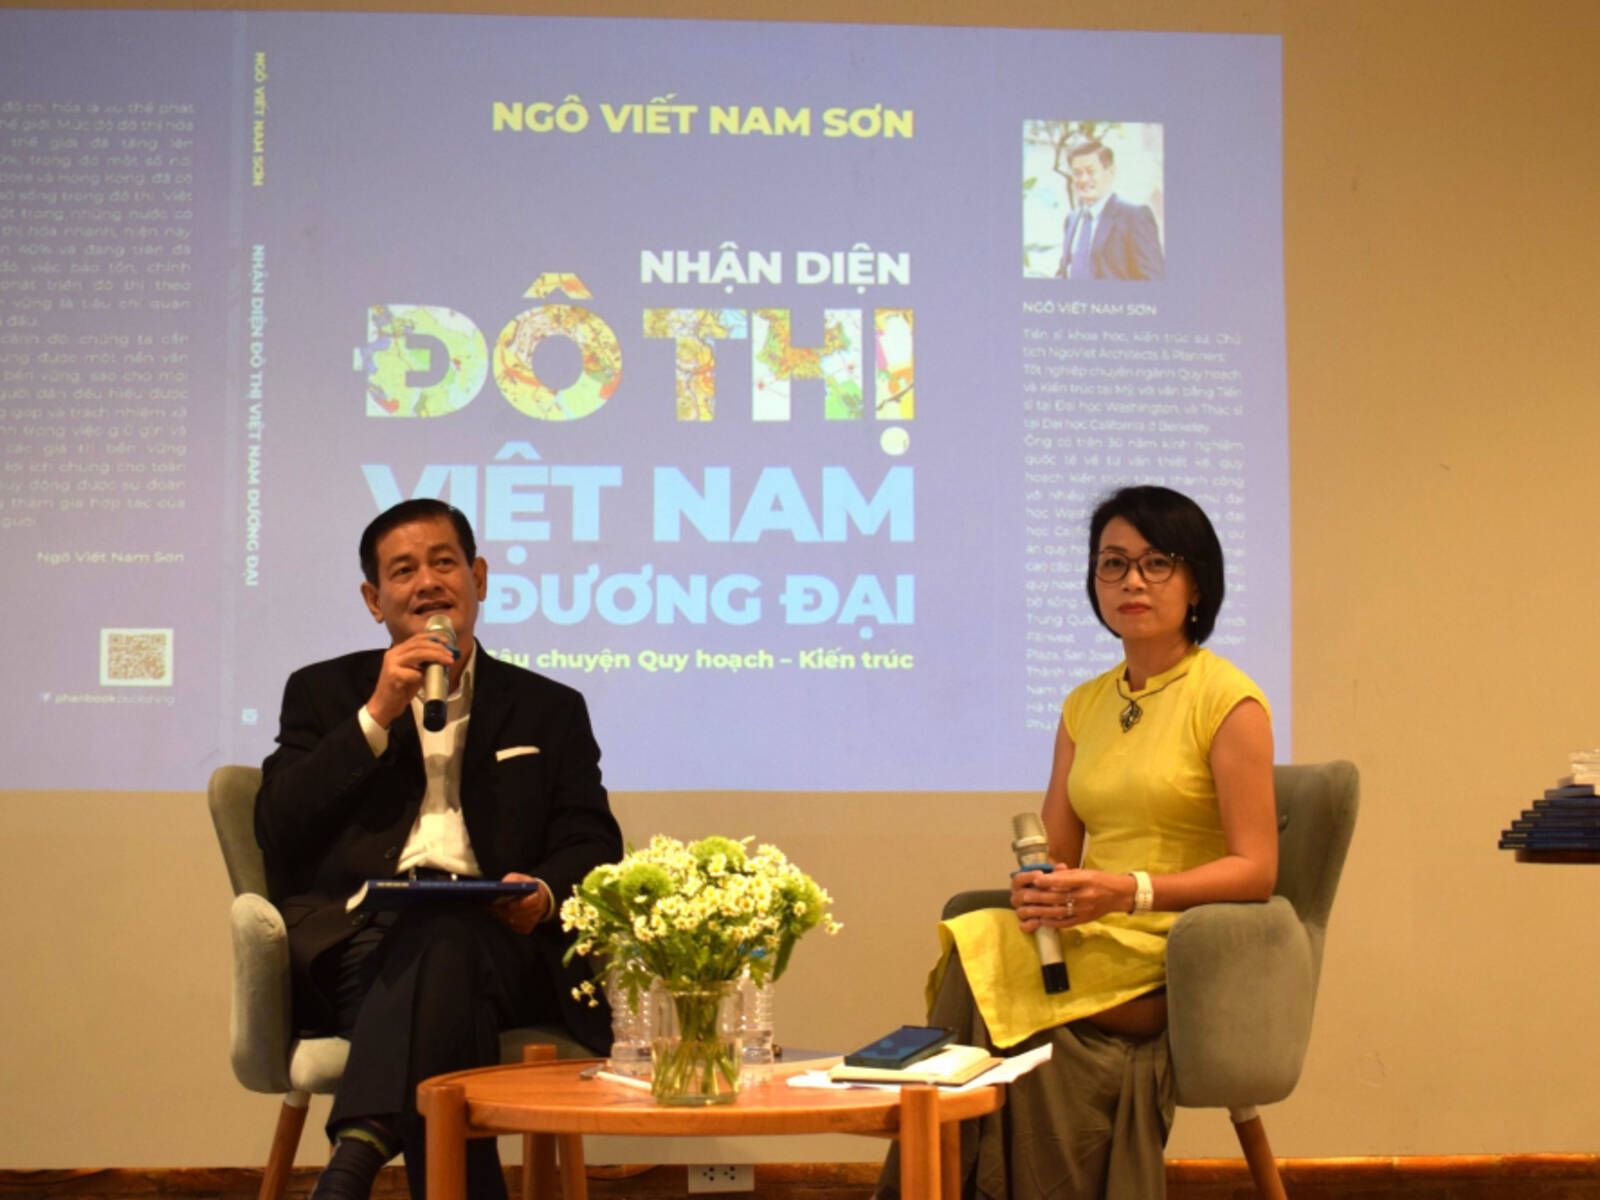 Nhận diện đô thị Việt Nam đương đại - Sách dành cho các kiến trúc sư, nhà quy hoạch đô thị Việt Nam